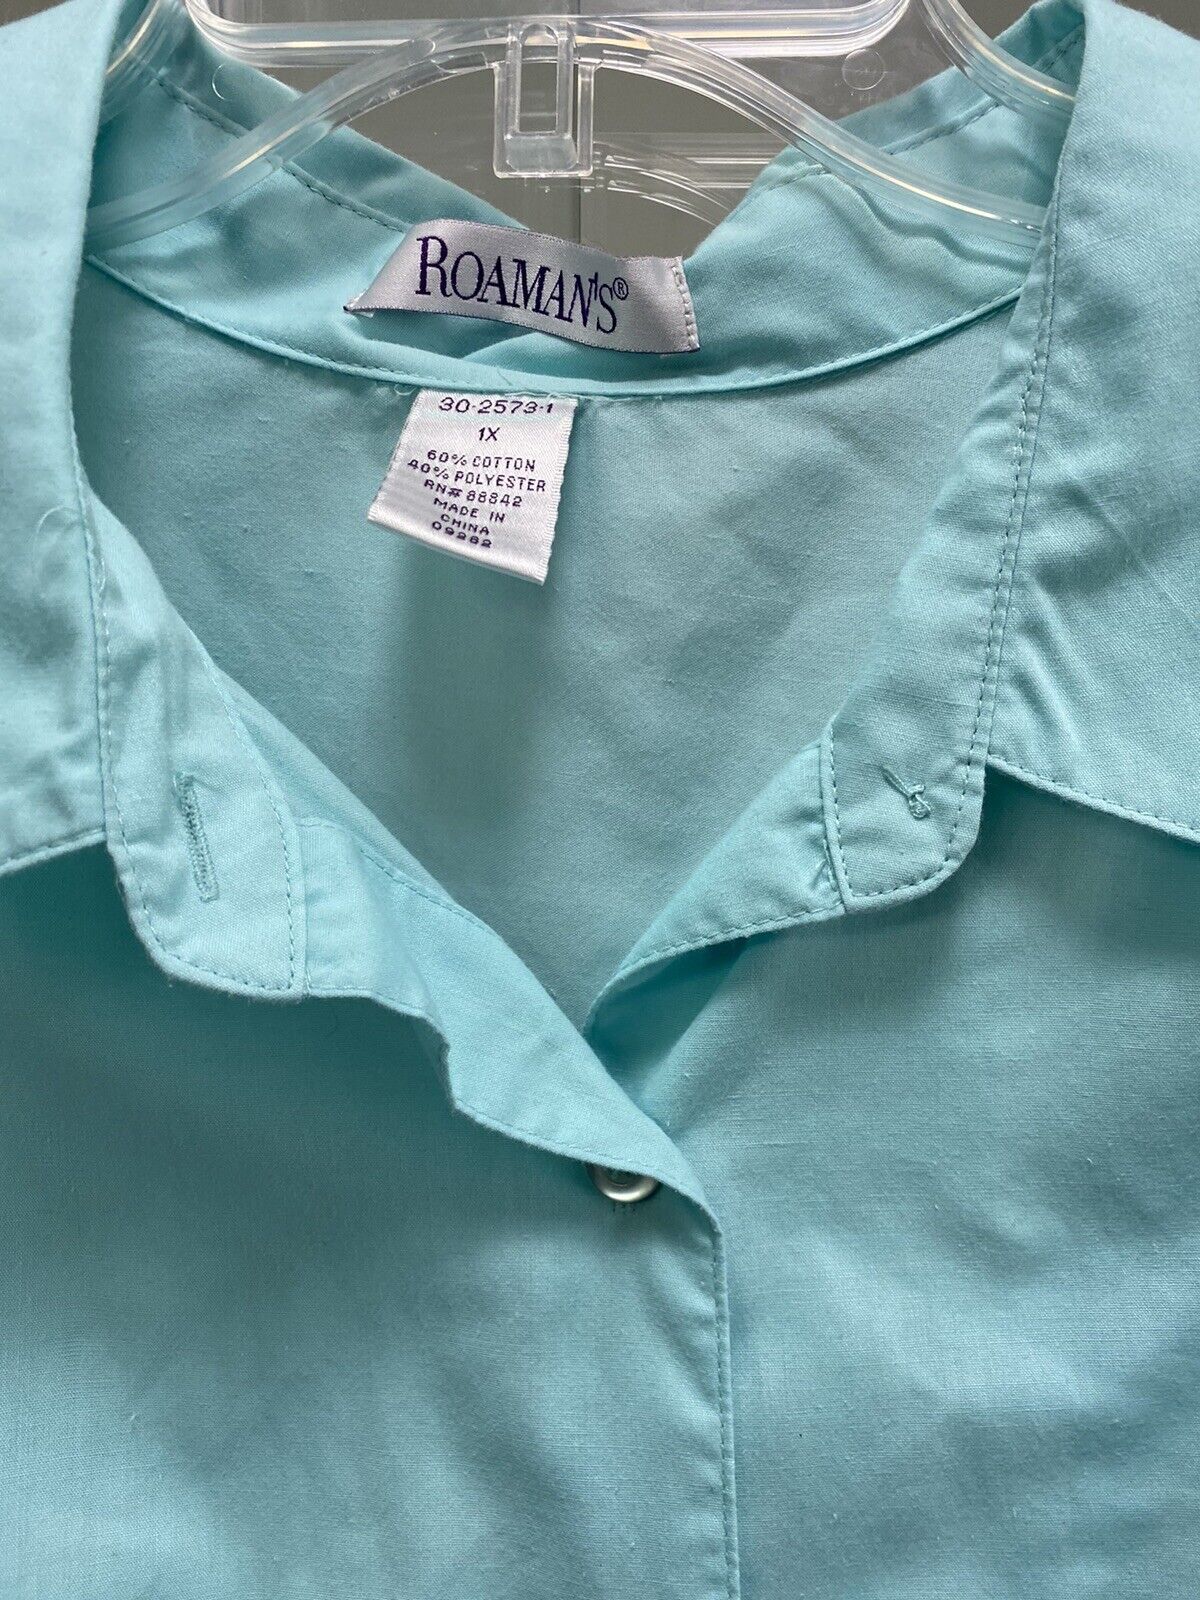 Roamans Button Front Blouse Plus Size 1X Aqua - image 3